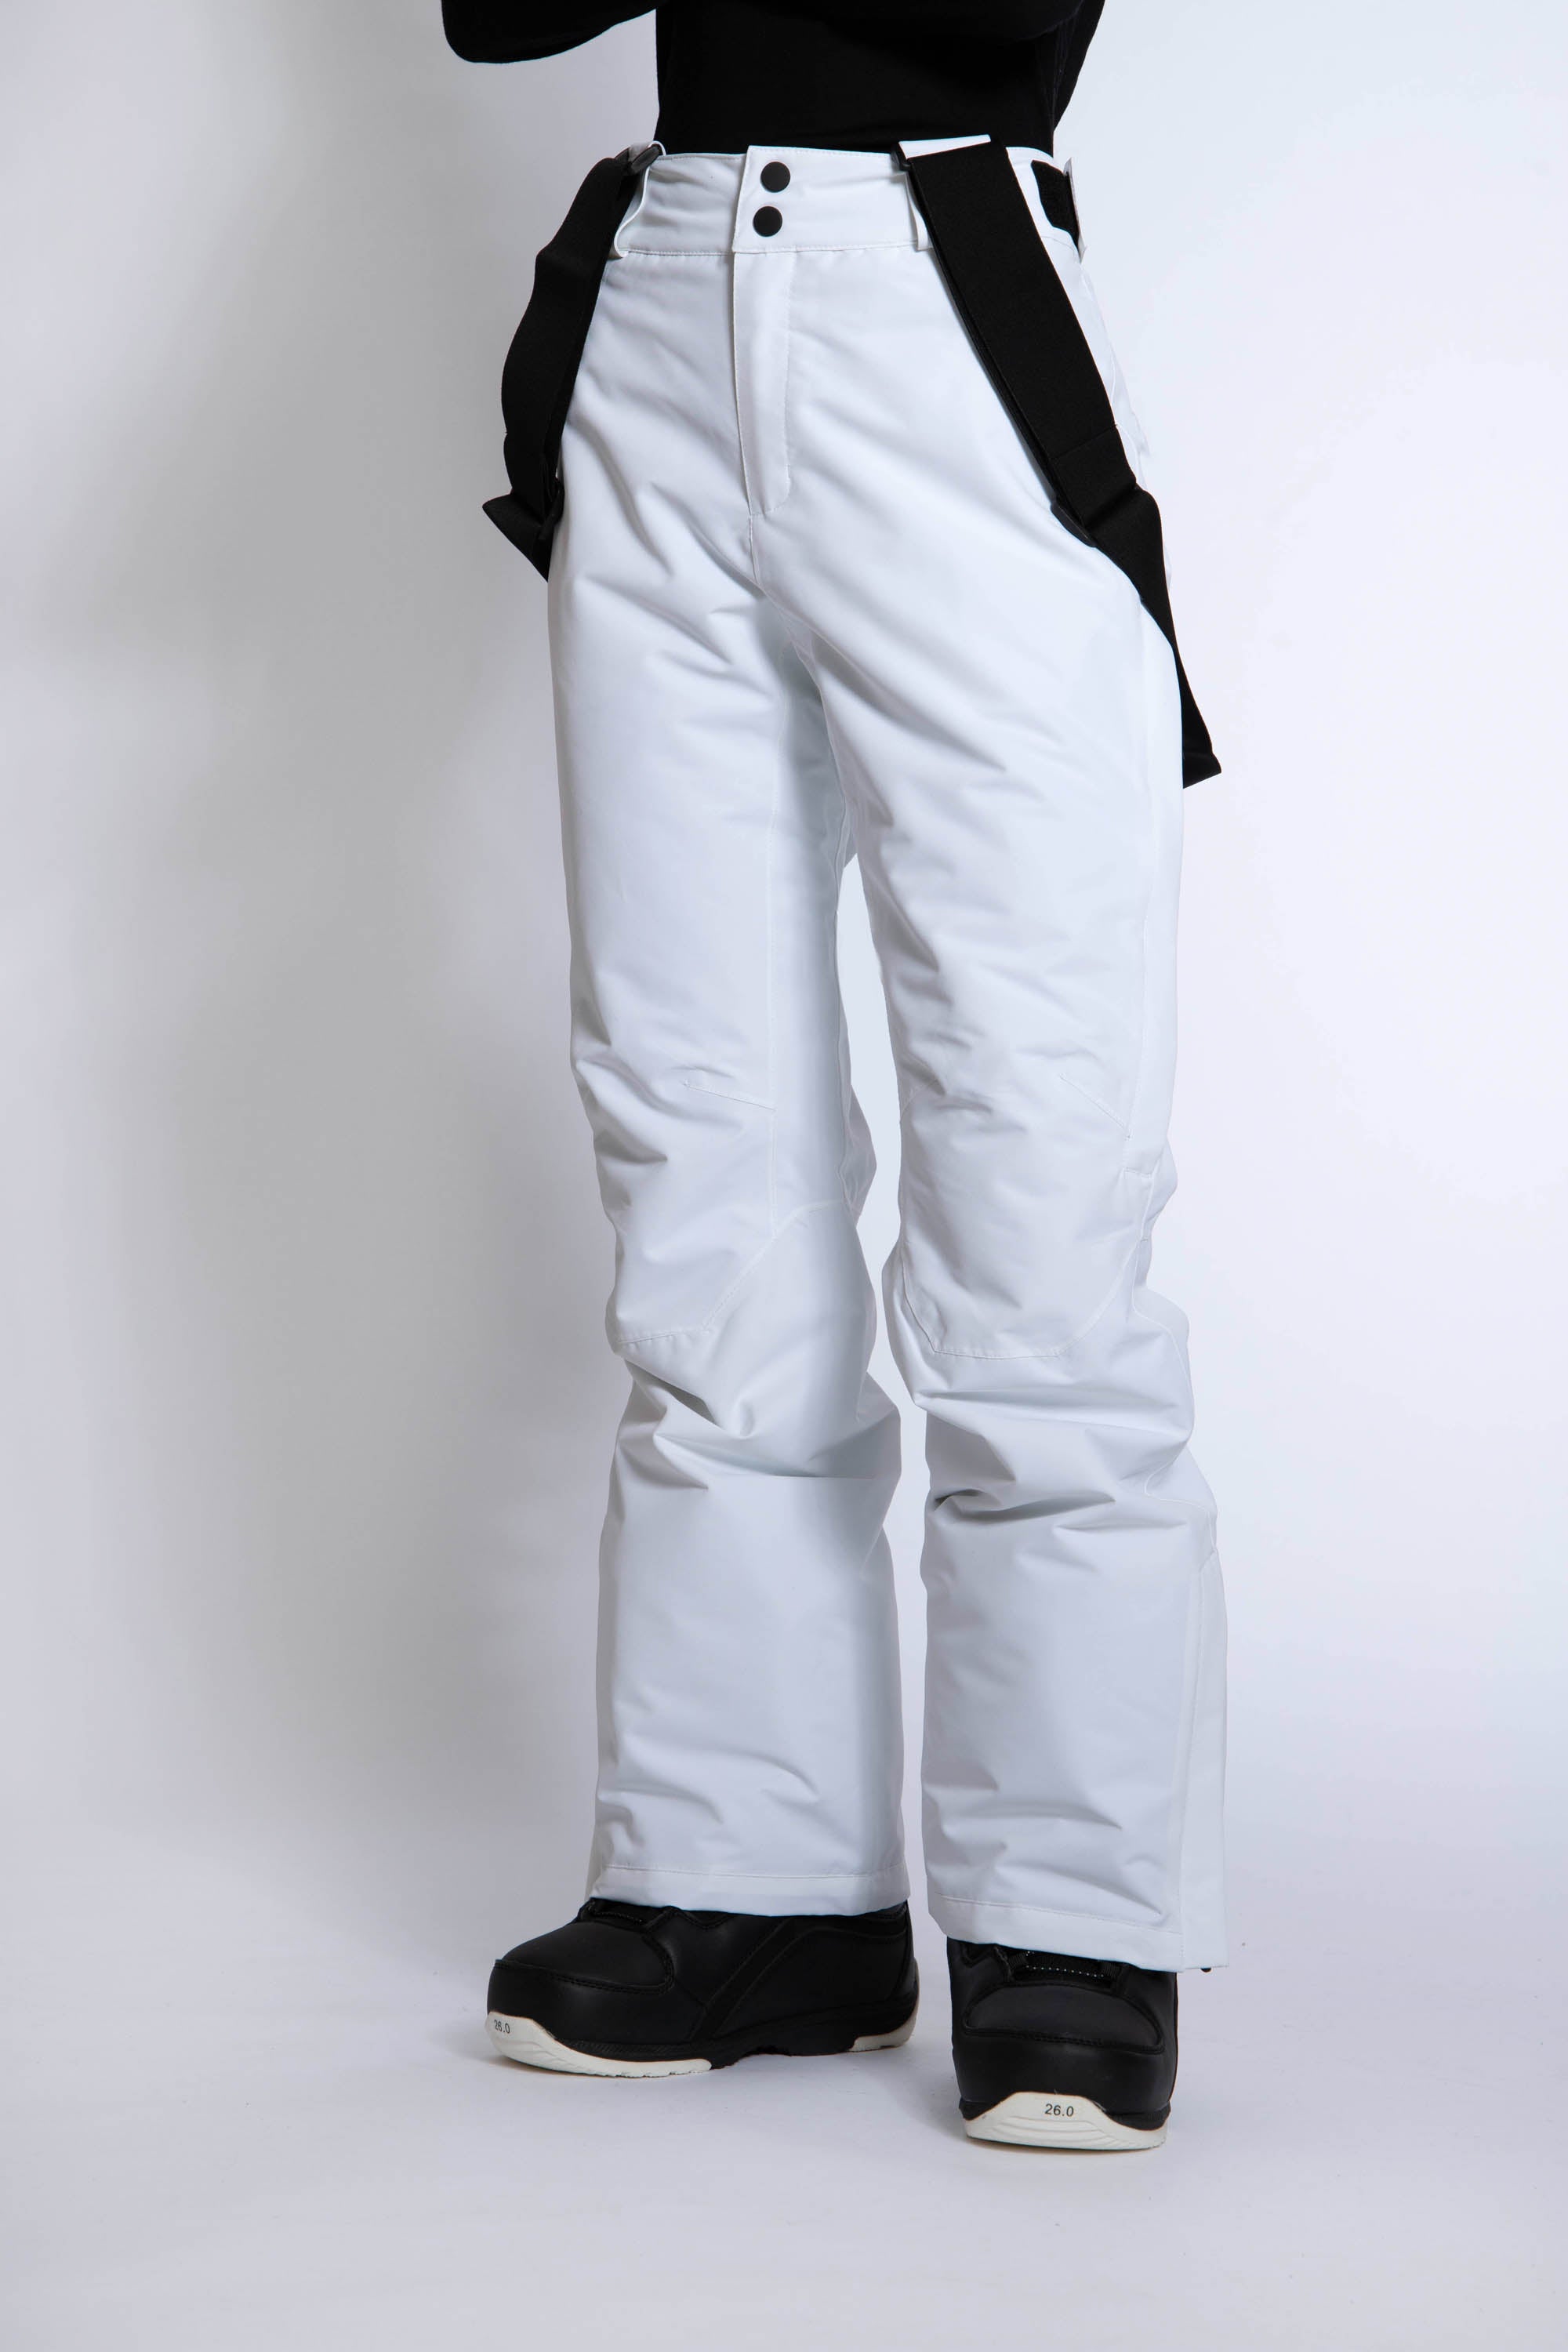 Renewed - Terra Ski Pants White - Large - Women's